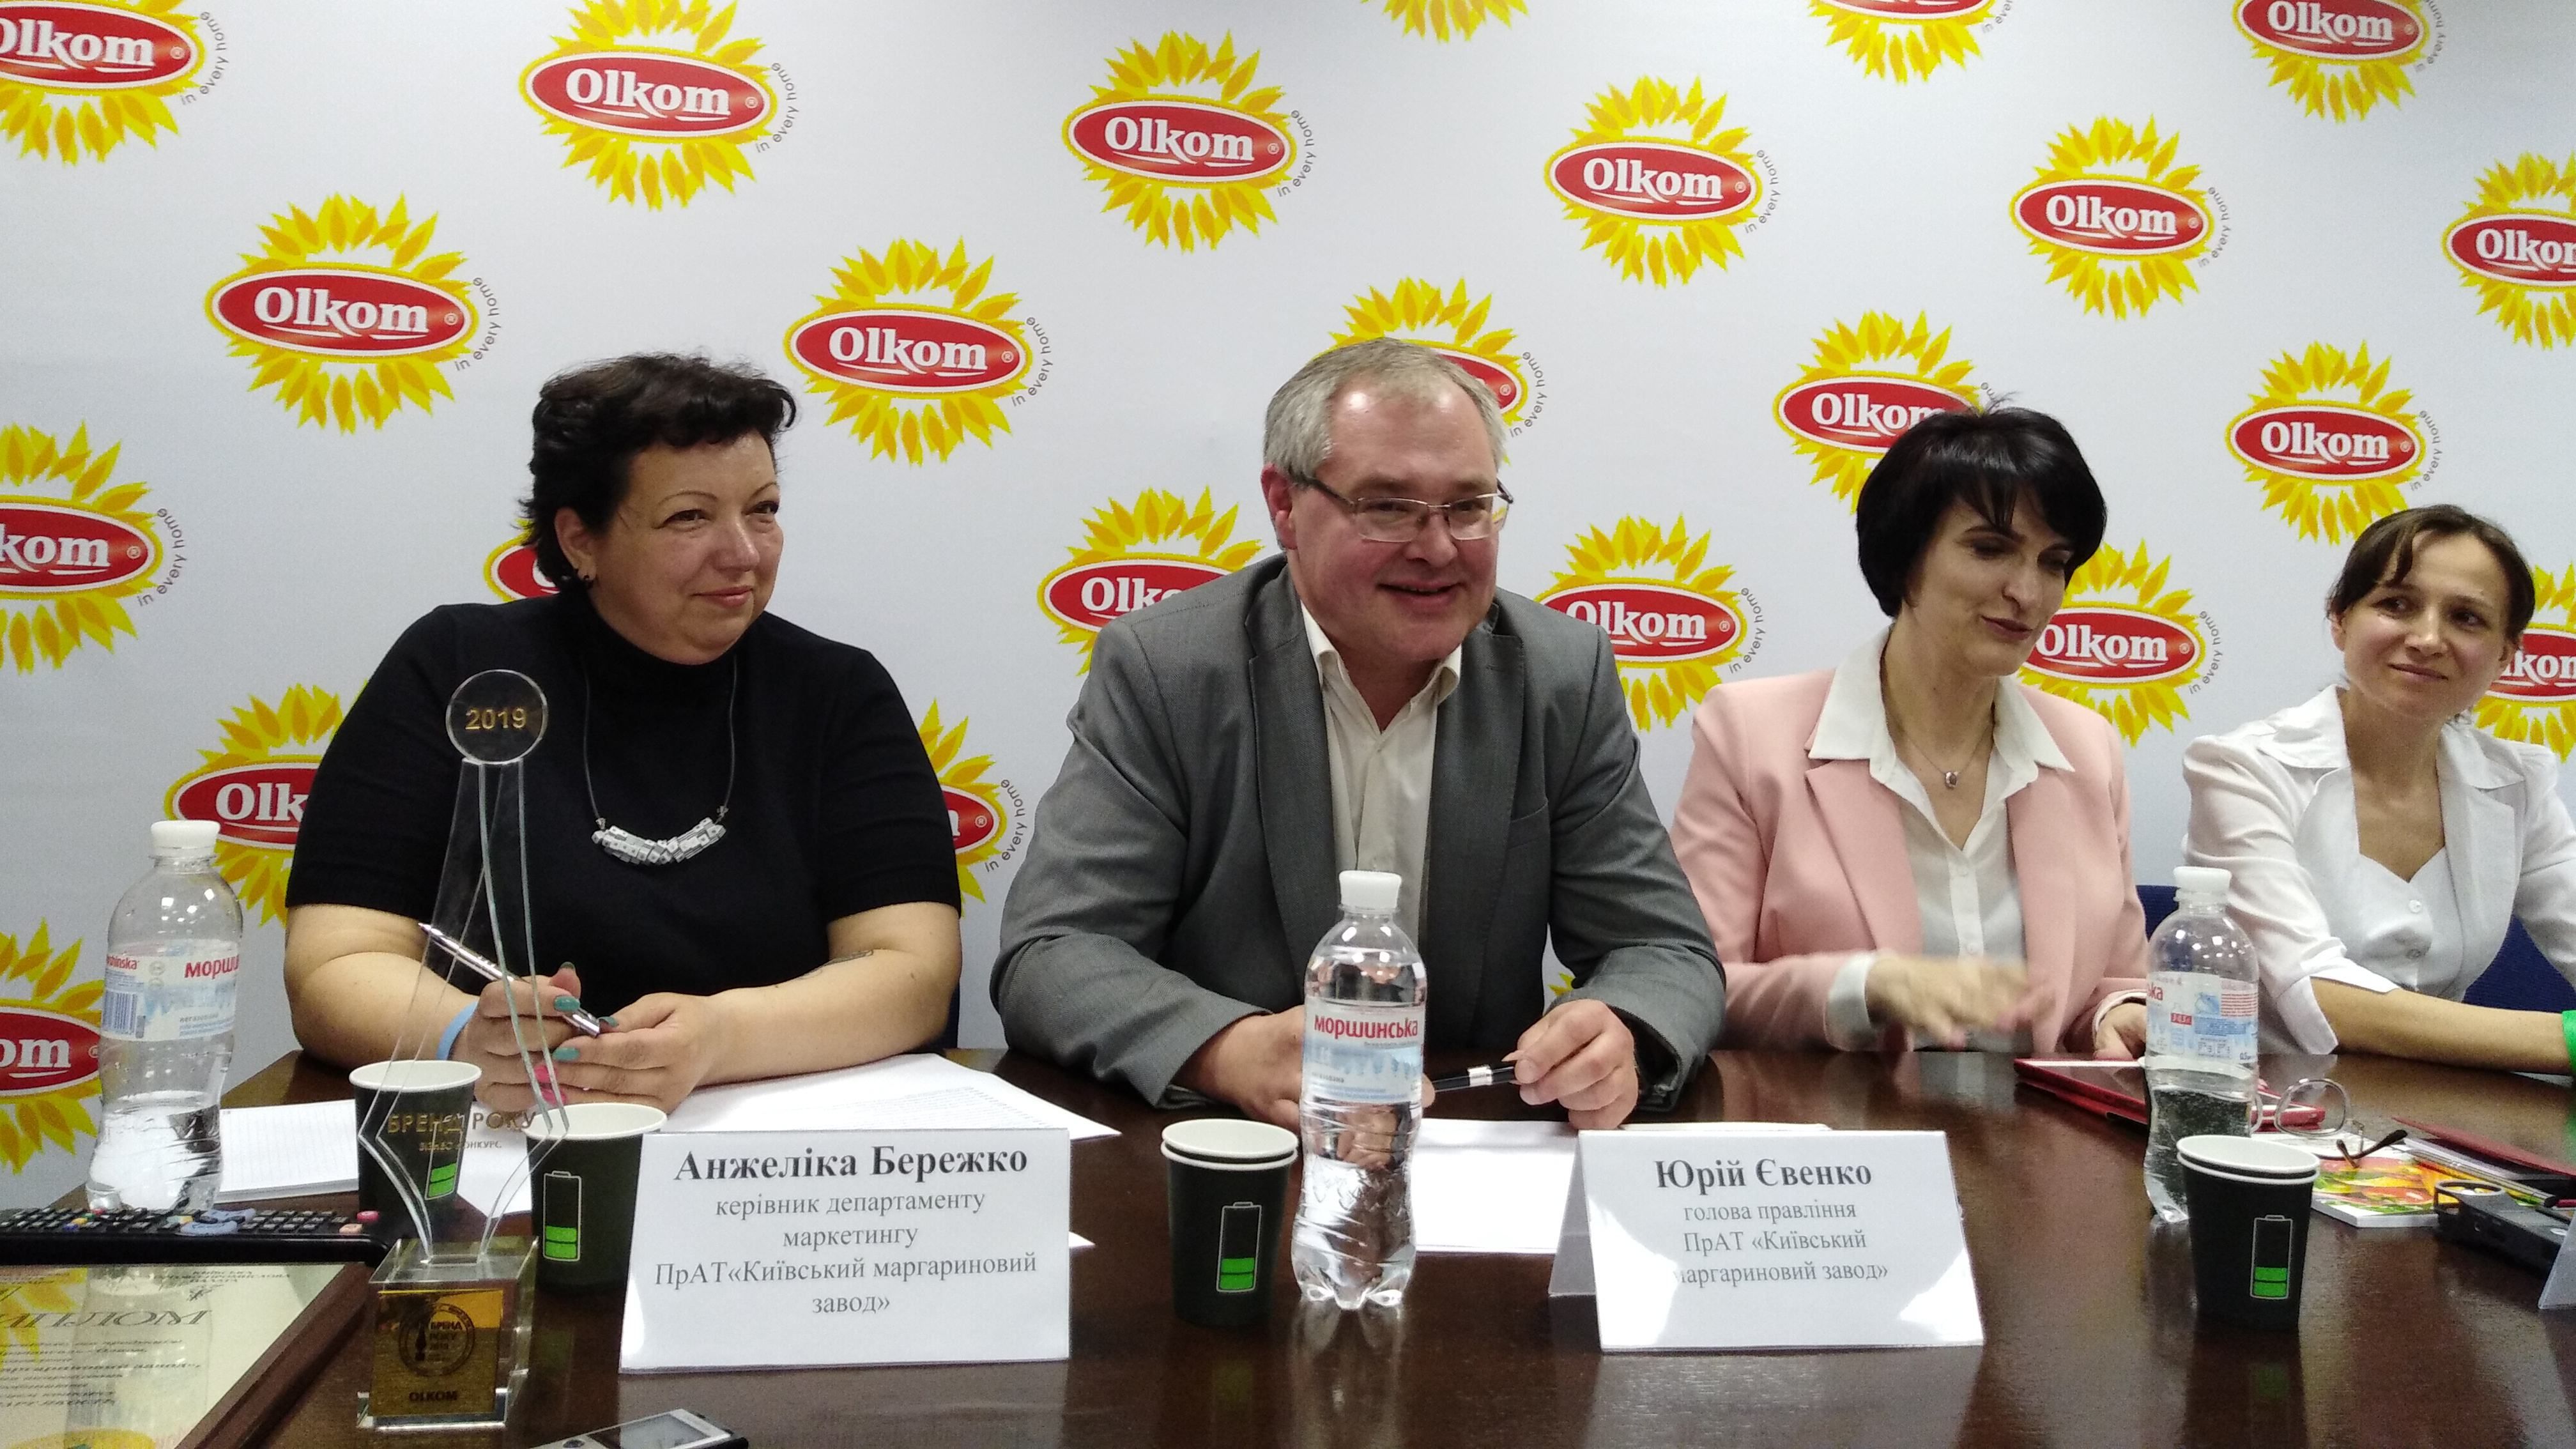 Продукция украинского производителя Olkom появится на полках магазинов и супермаркетов в Европе